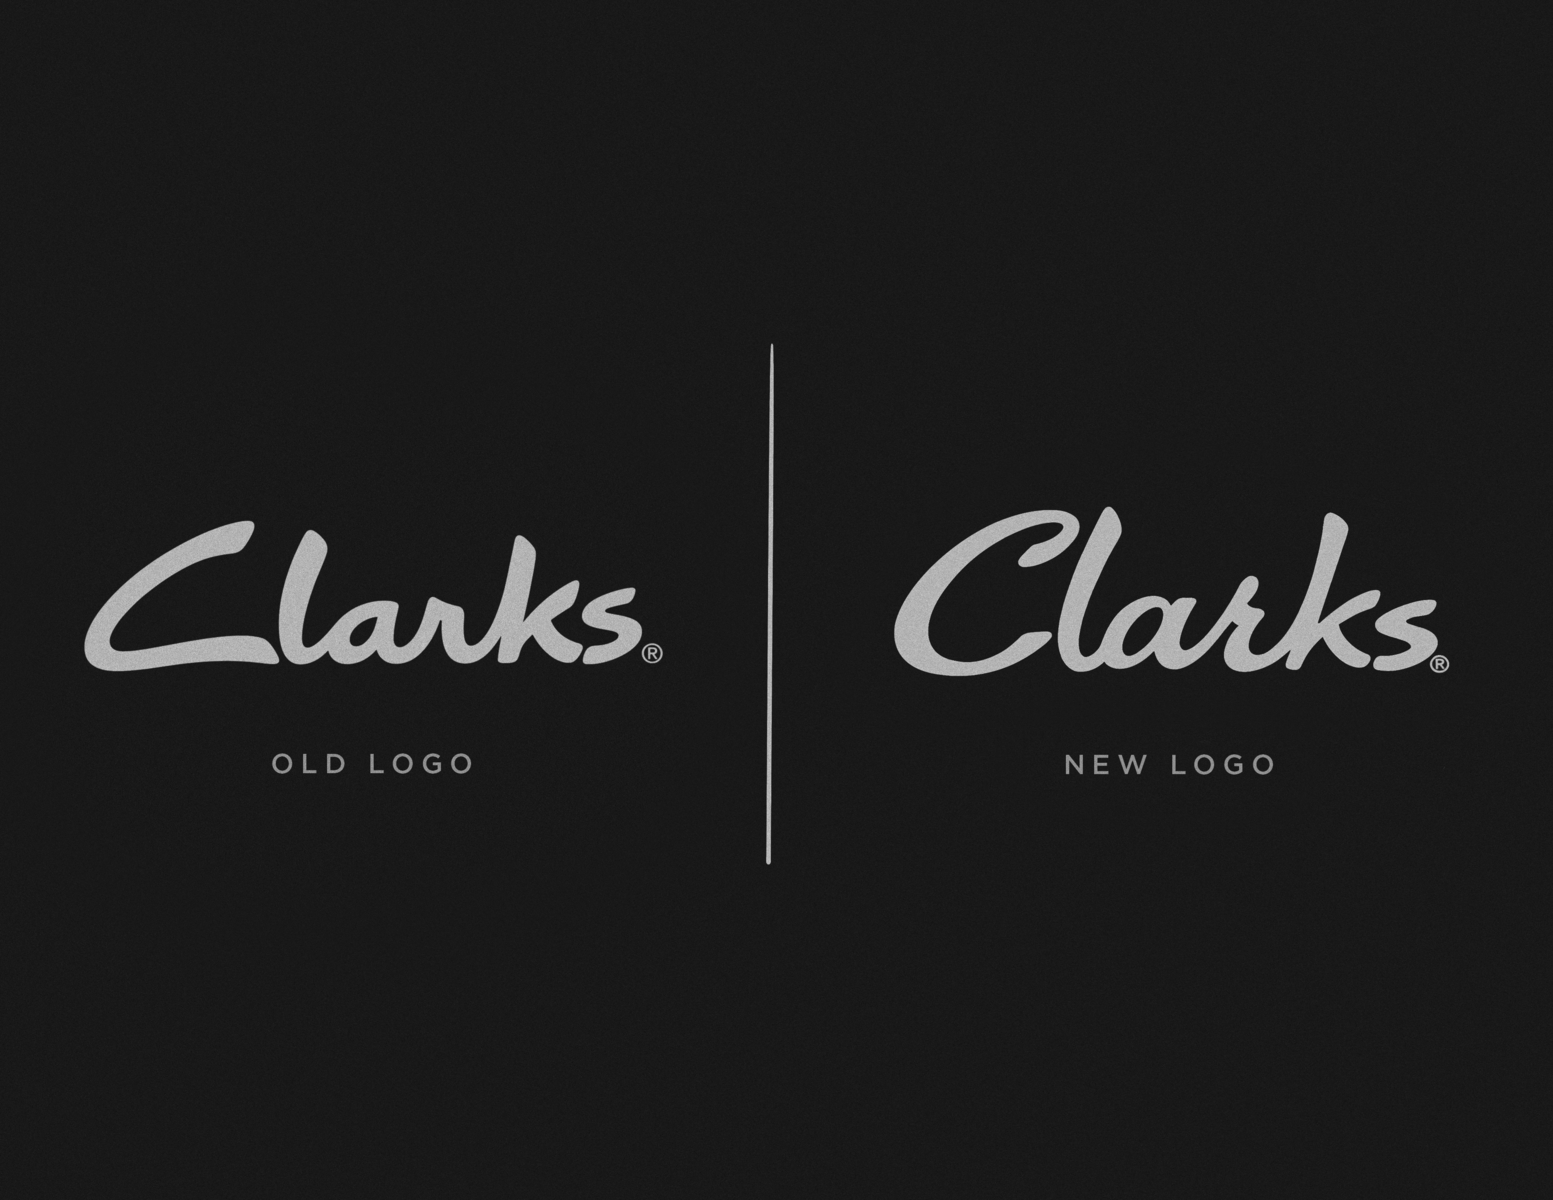 logo clarks